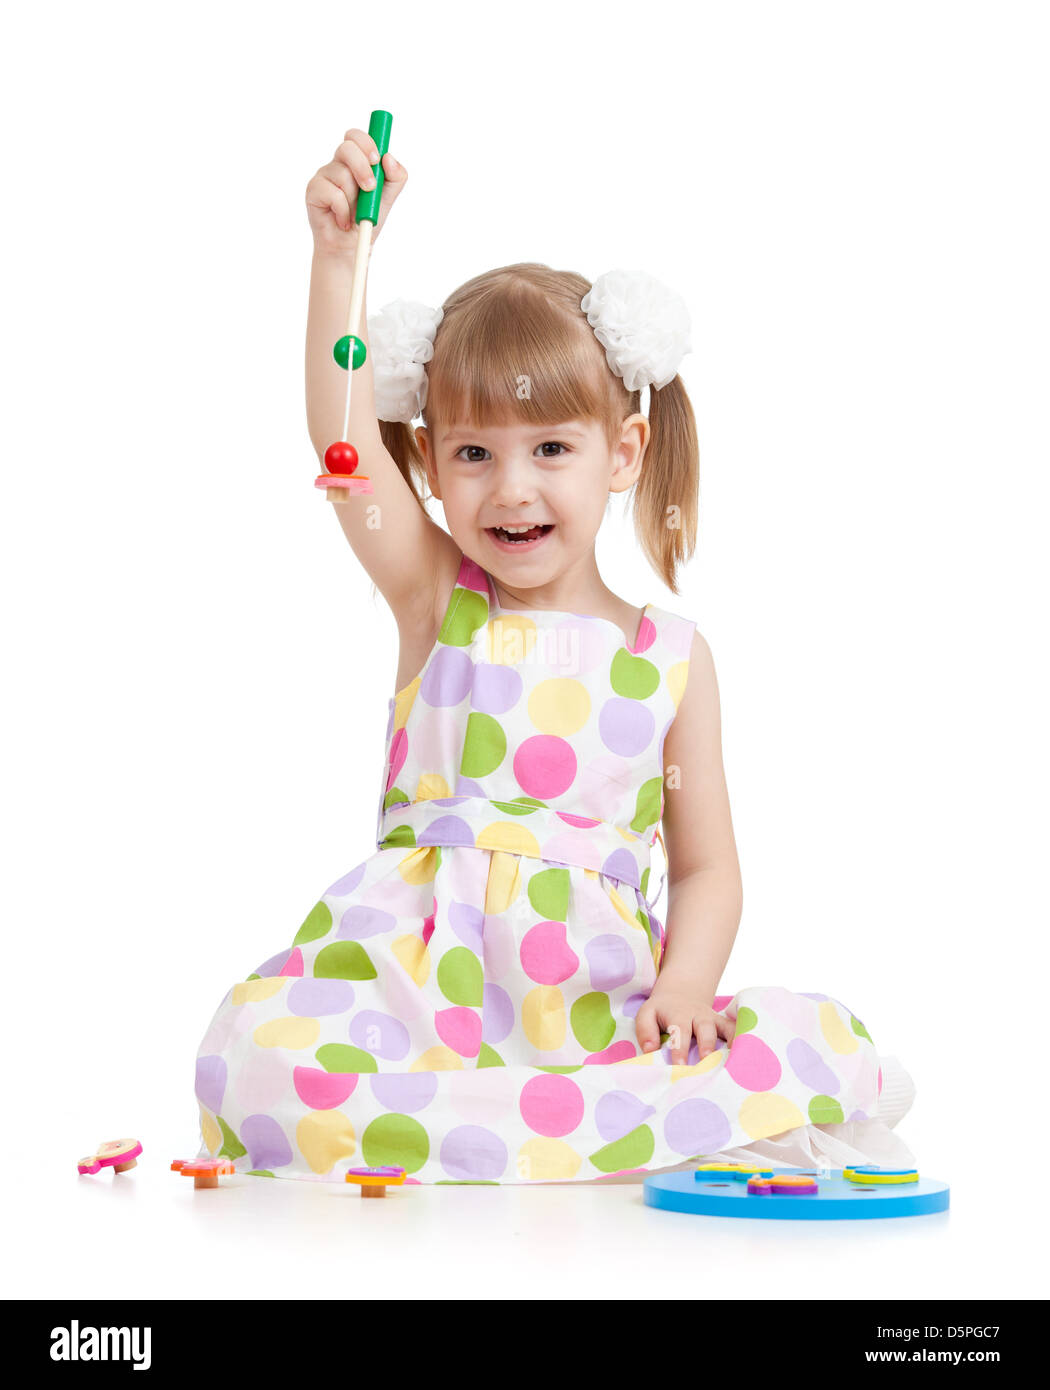 Lustige kleine Mädchen spielen mit Spielzeug, isoliert auf weiß Stockfoto